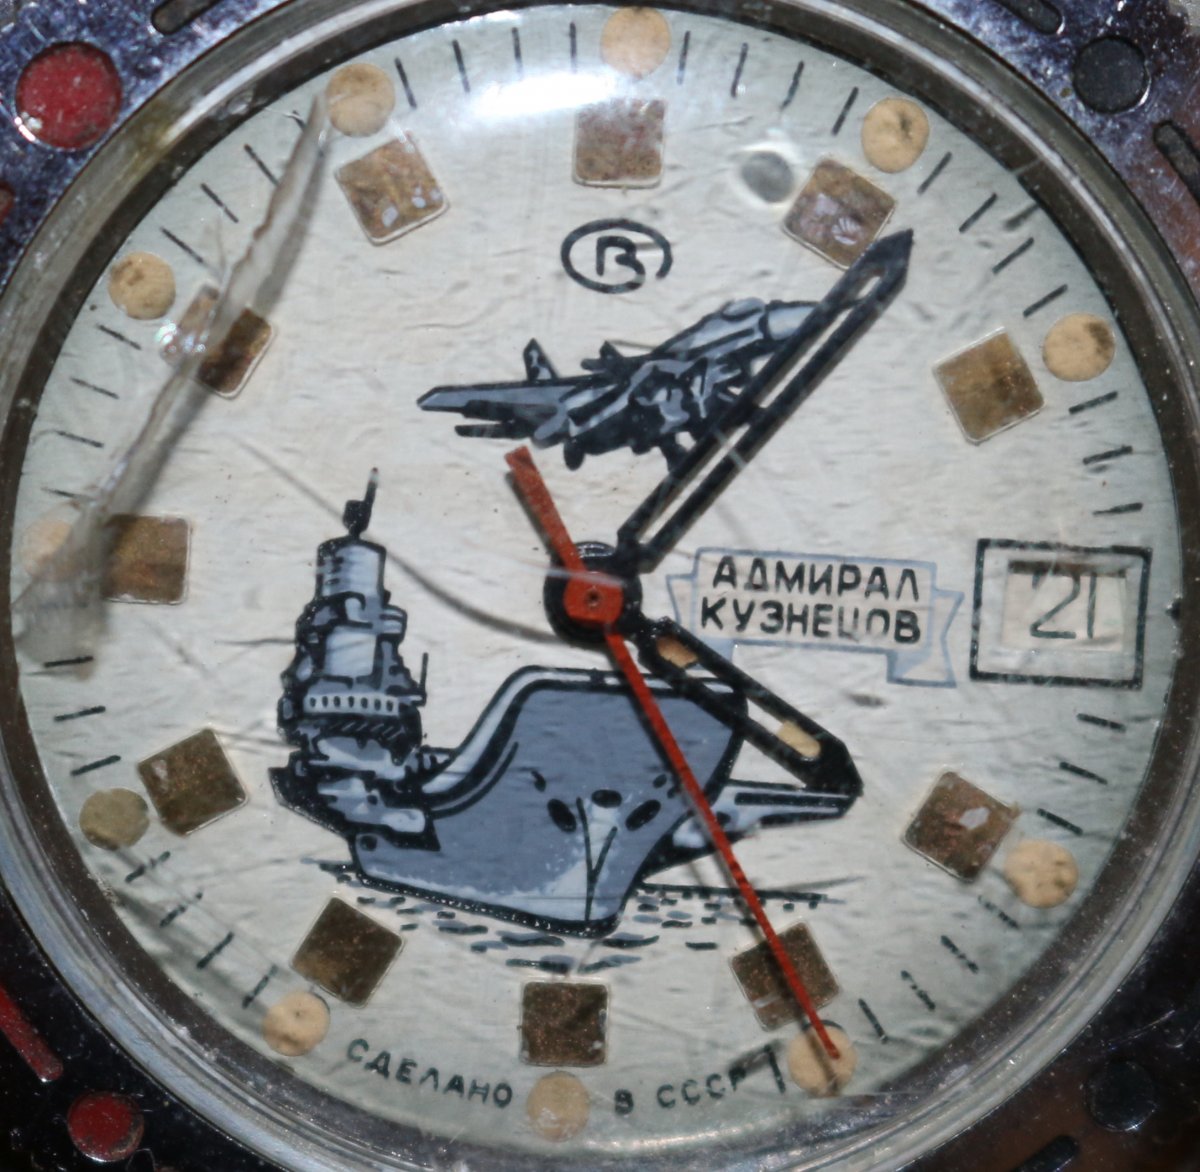 Изготовляемые часы кузнецами были. Командирские часы Адмирал Кузнецов. Часы 24 часа циферблат ТАВКР Кузнецов. Часы Командирские амфибия Адмирал Кузнецов. Часы Восток Командирские 24 часа.